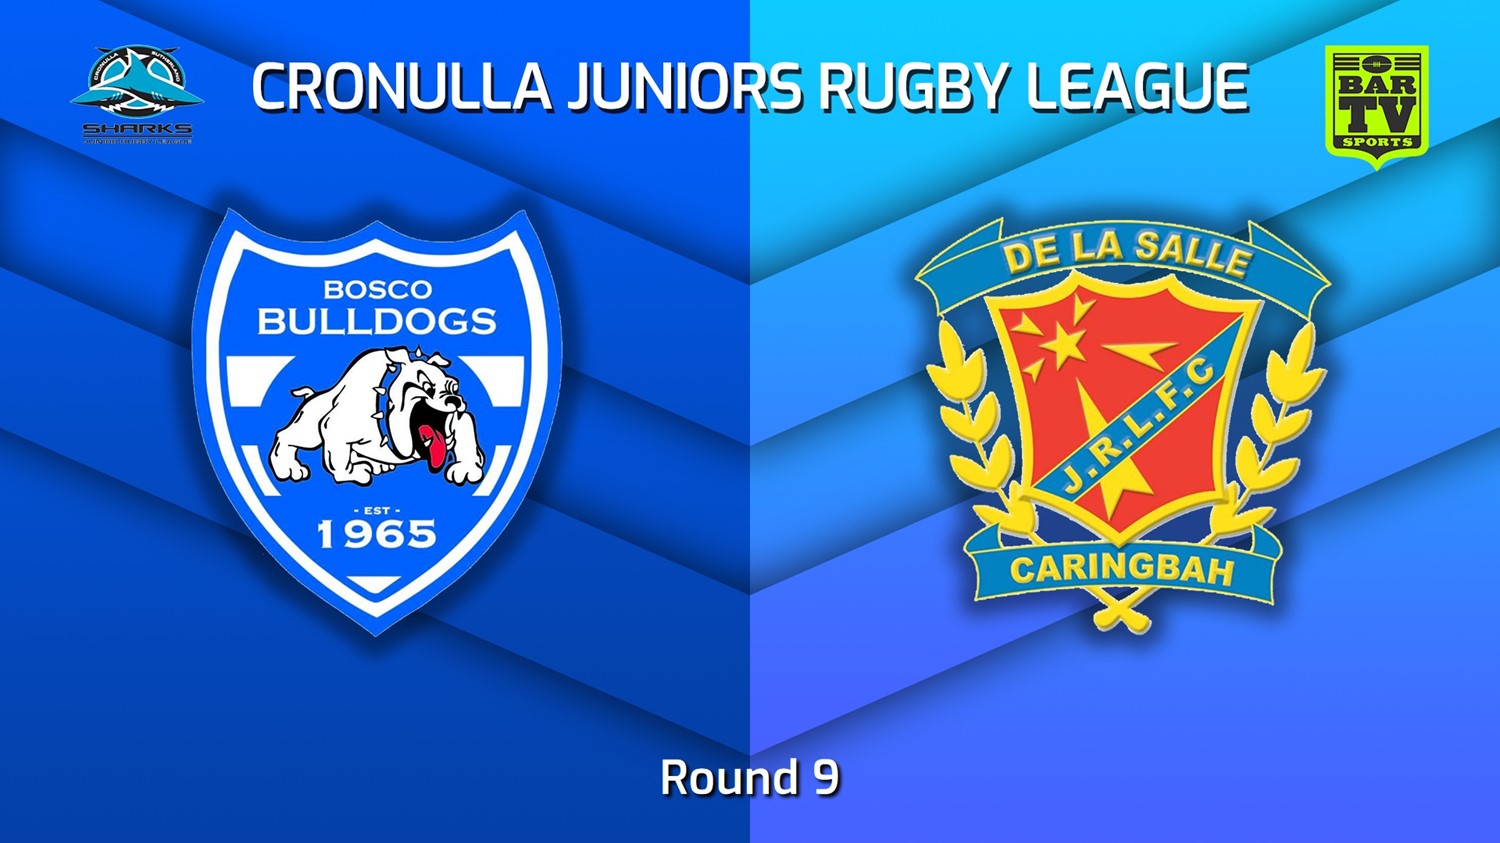 220702-Cronulla Juniors Round 9 - St John Bosco Bulldogs v De La Salle Minigame Slate Image